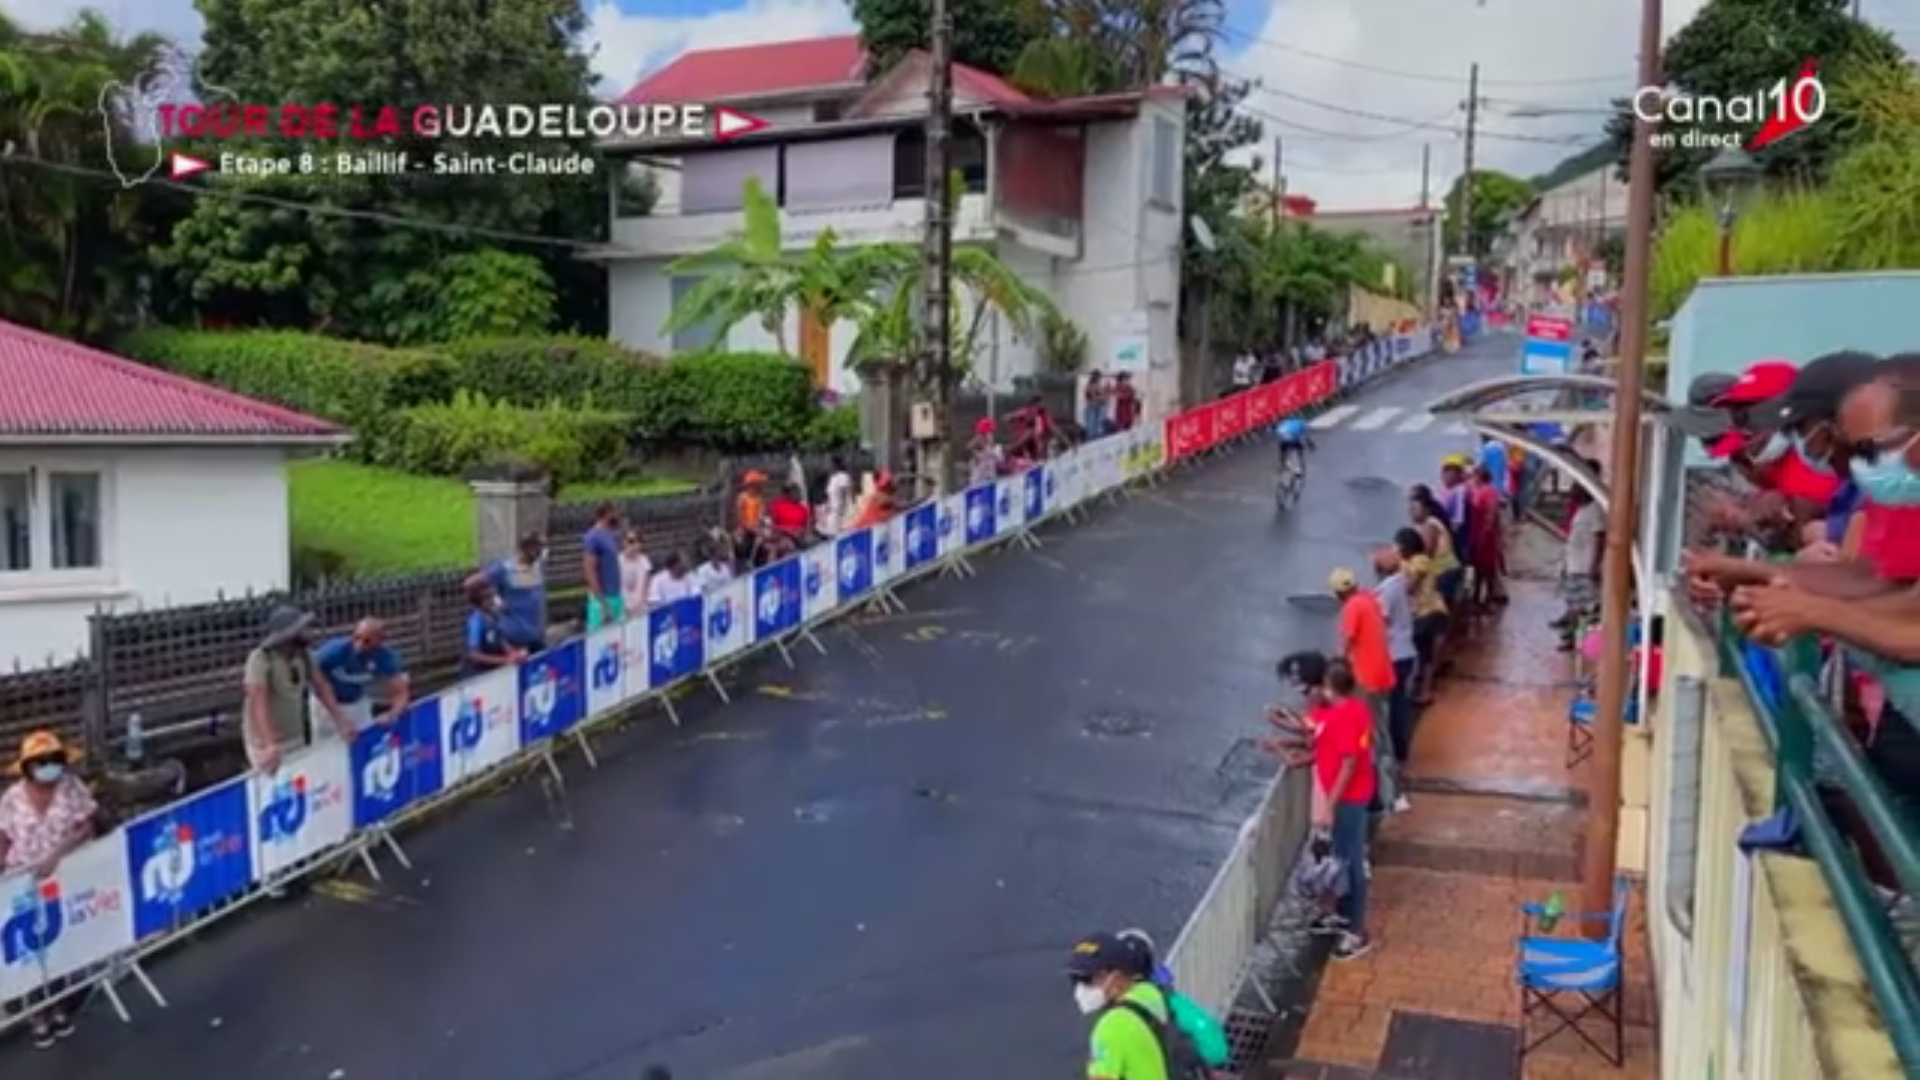 [Vidéo] Guadeloupe Tour cycliste. Victoire 8ème étape Baillif Saint Claude Clément BRAZ AlLPHONSO